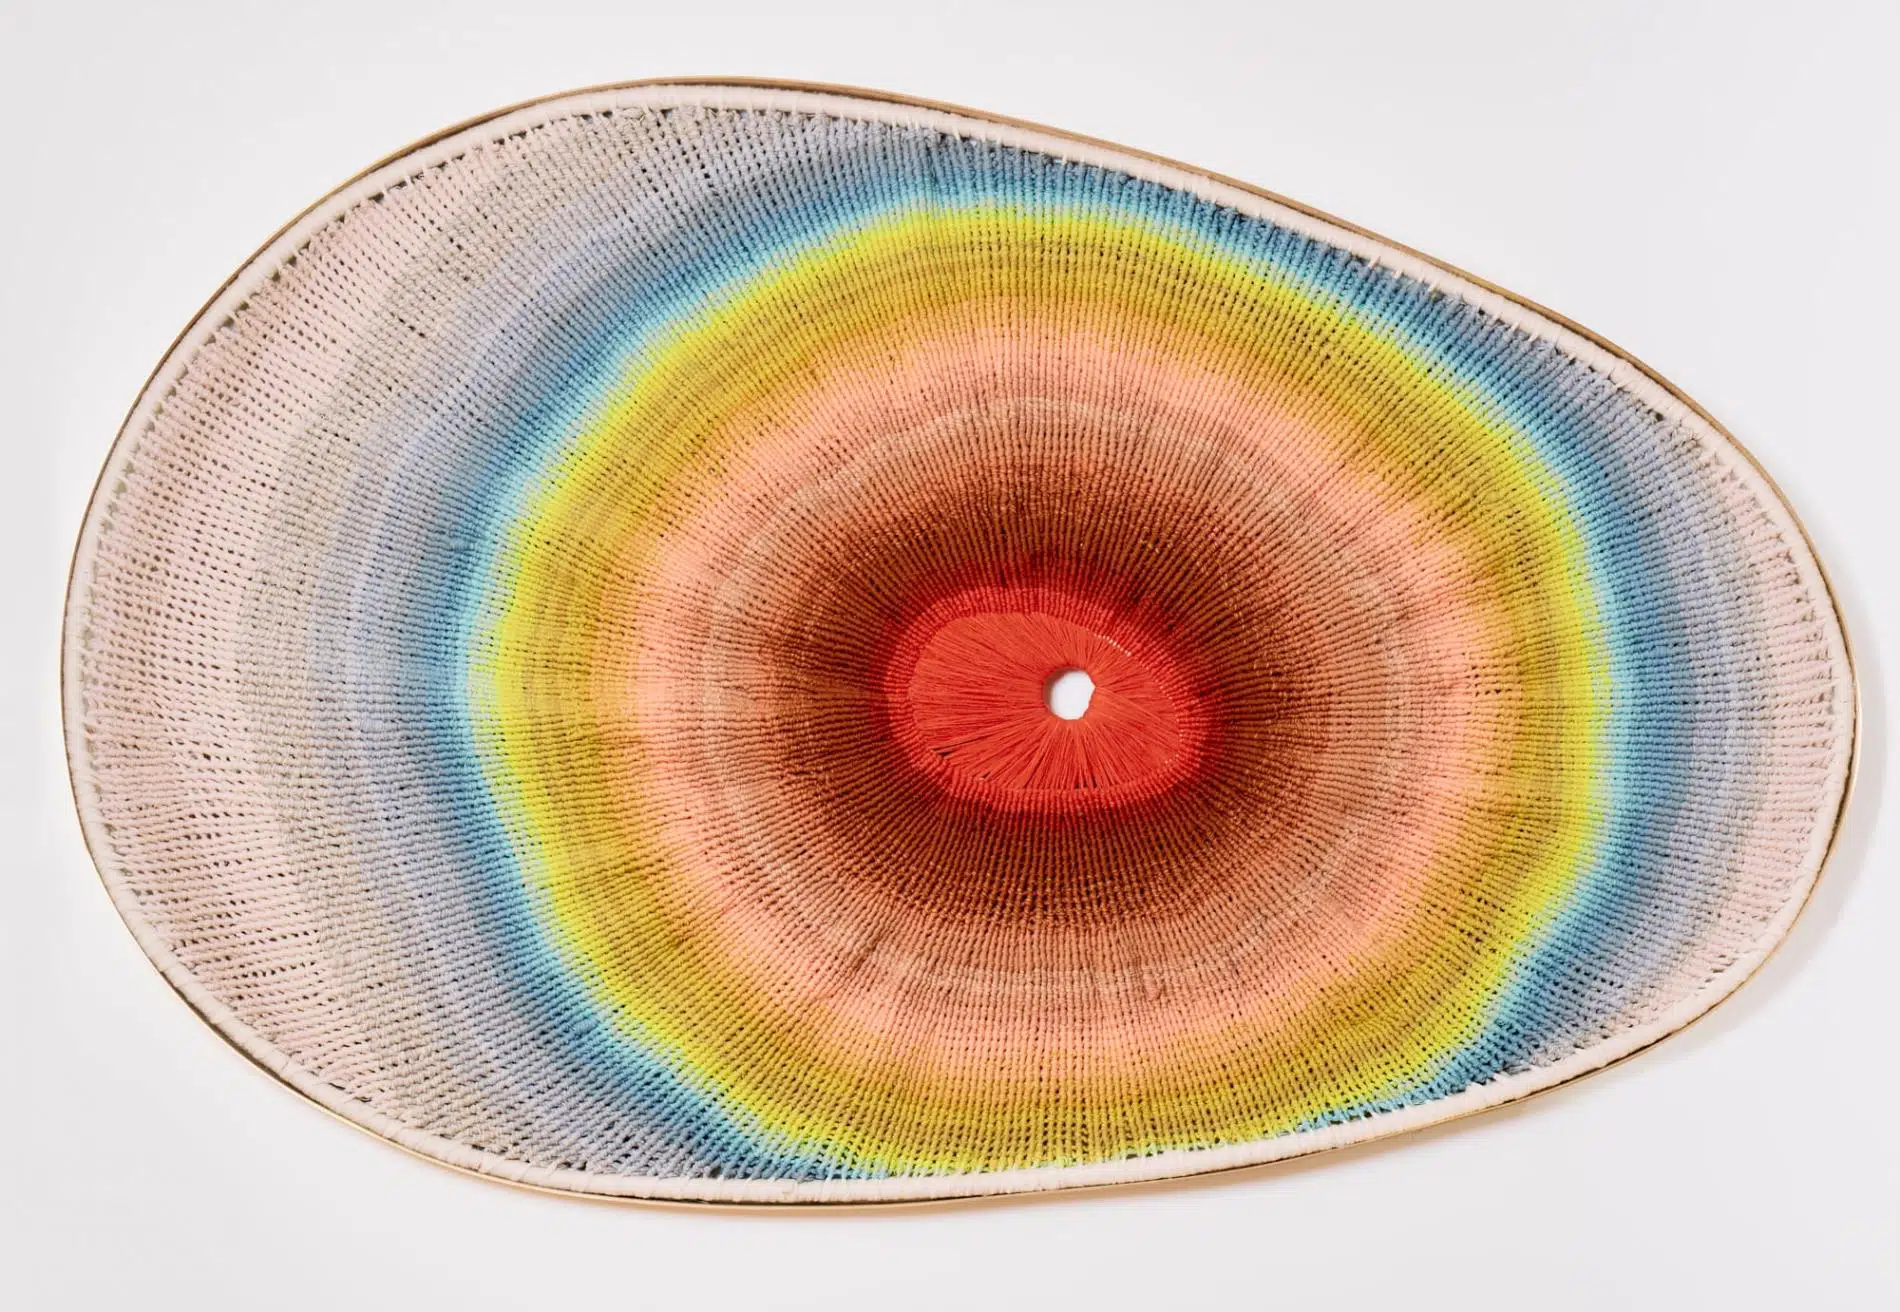 tapices tejidos con fibras naturales en colores degradados